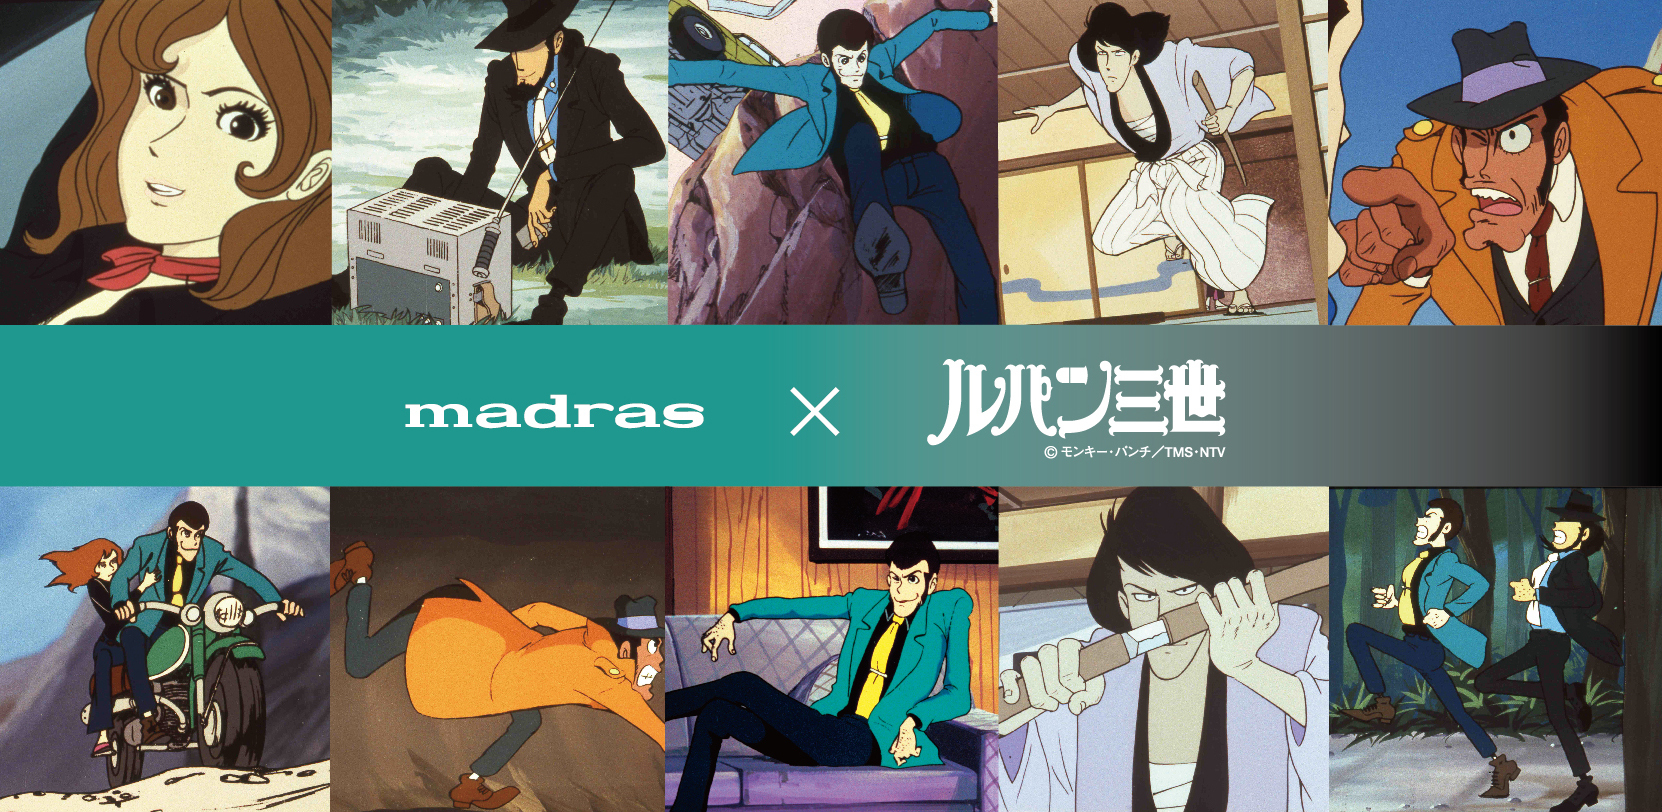 マドラスとアニメ ルパン三世 Part1シリーズのコラボレーション商品マドラスオンラインショップにて9月28日 水 より受注販売 マドラス株式会社のプレスリリース